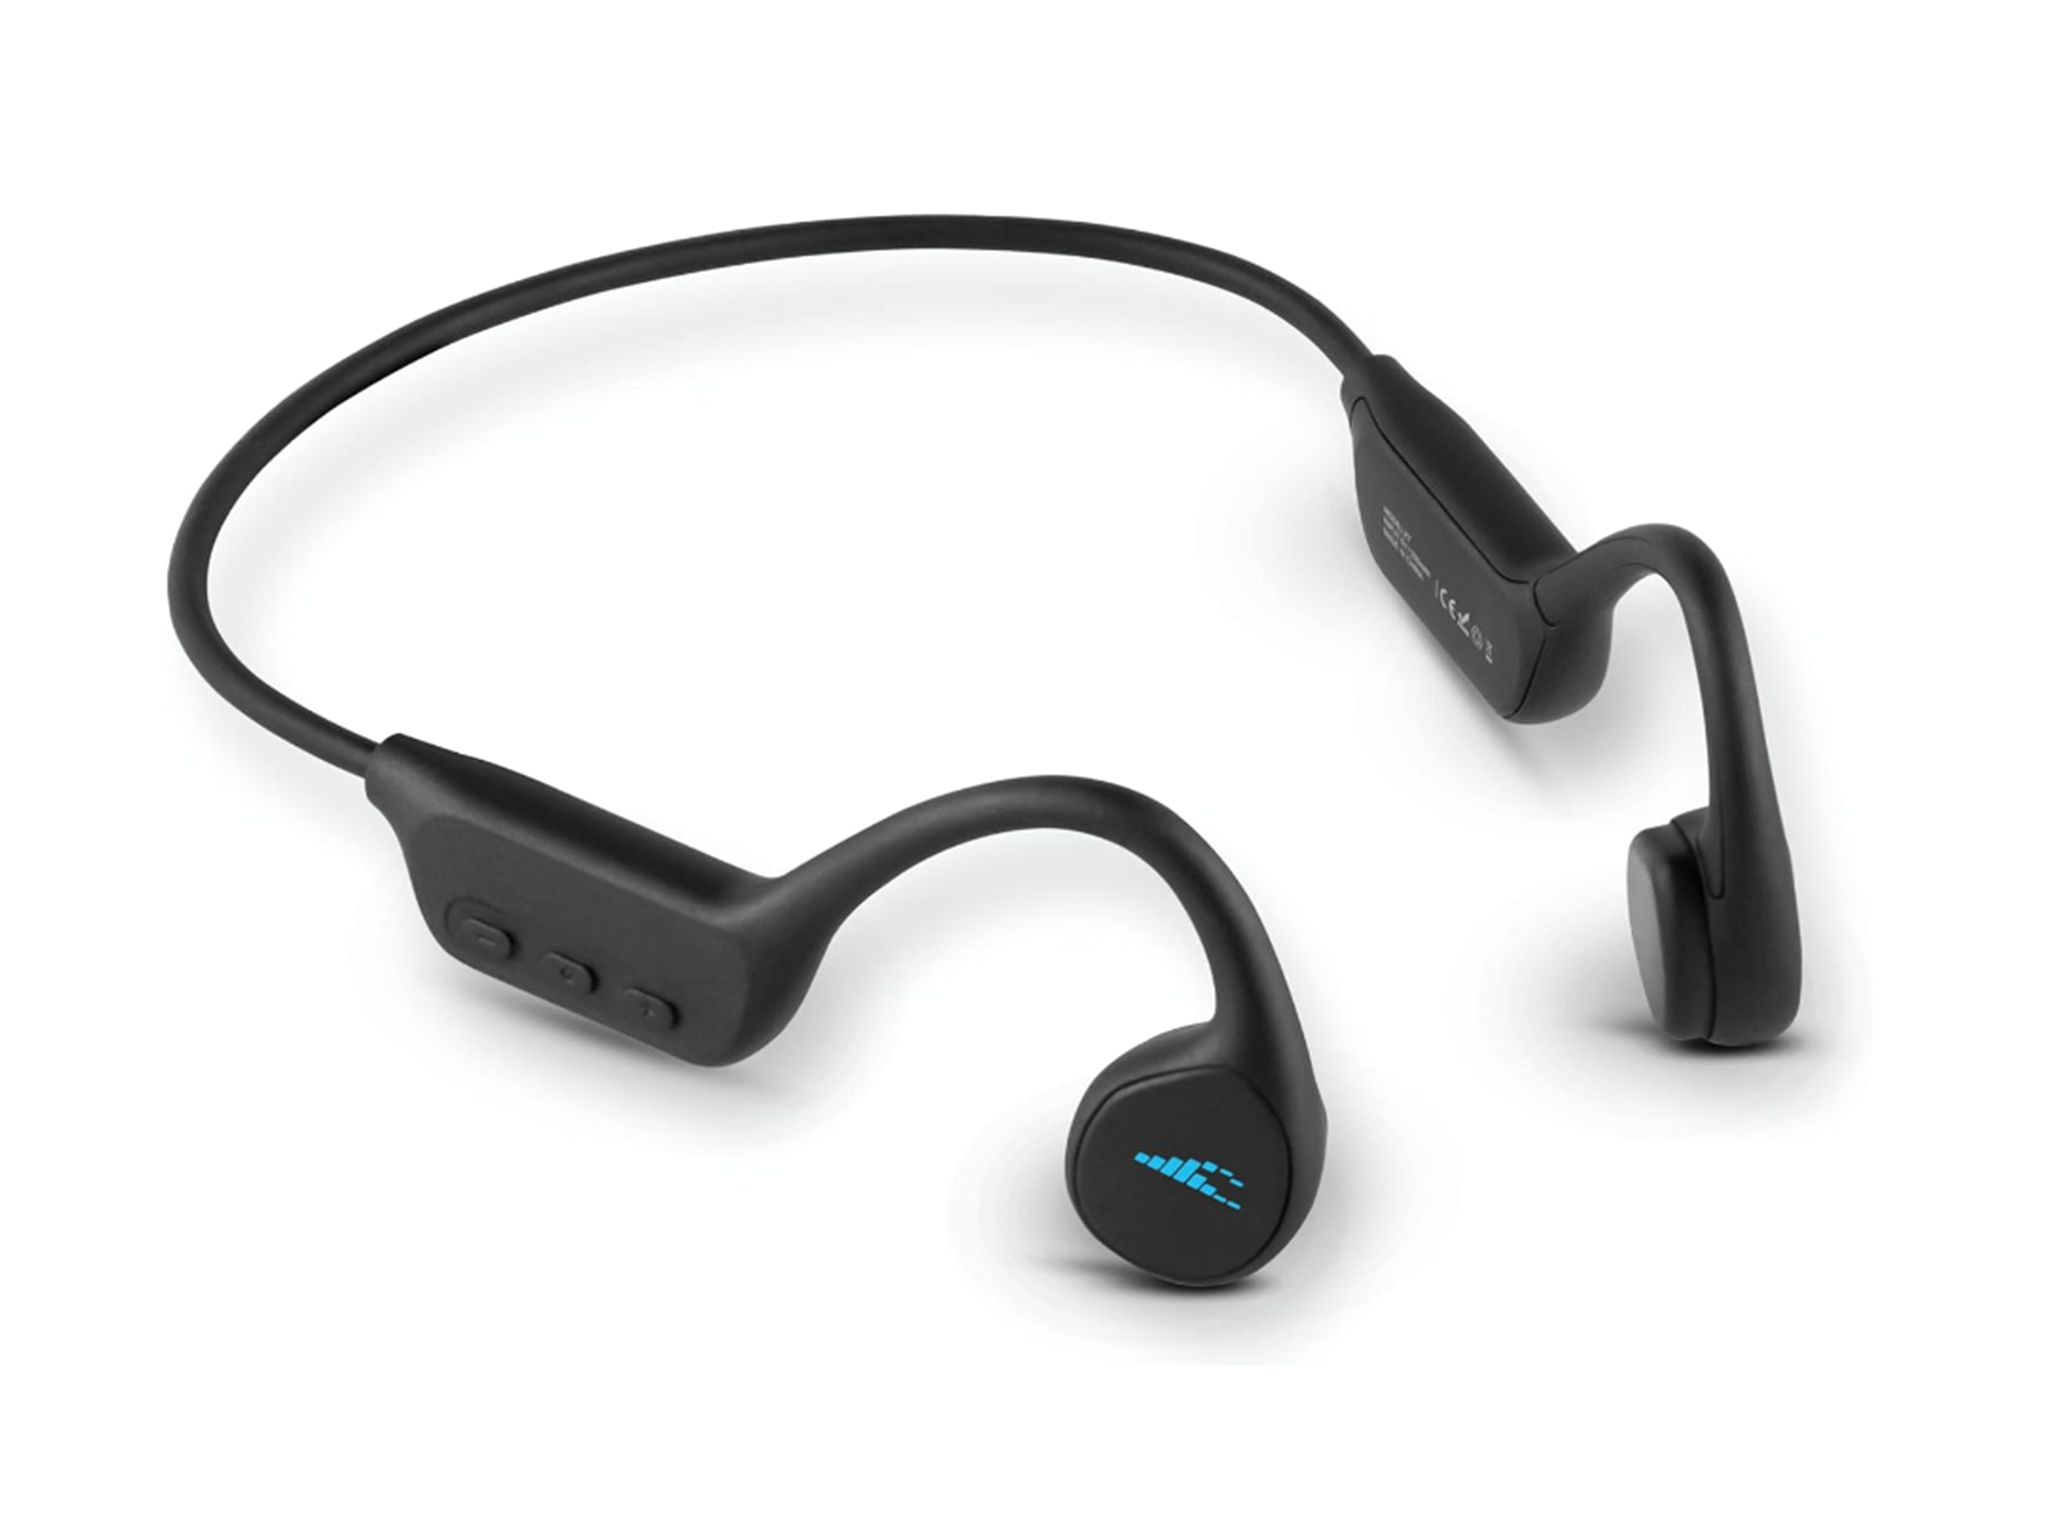 H20 audio tri bone conduction headphones